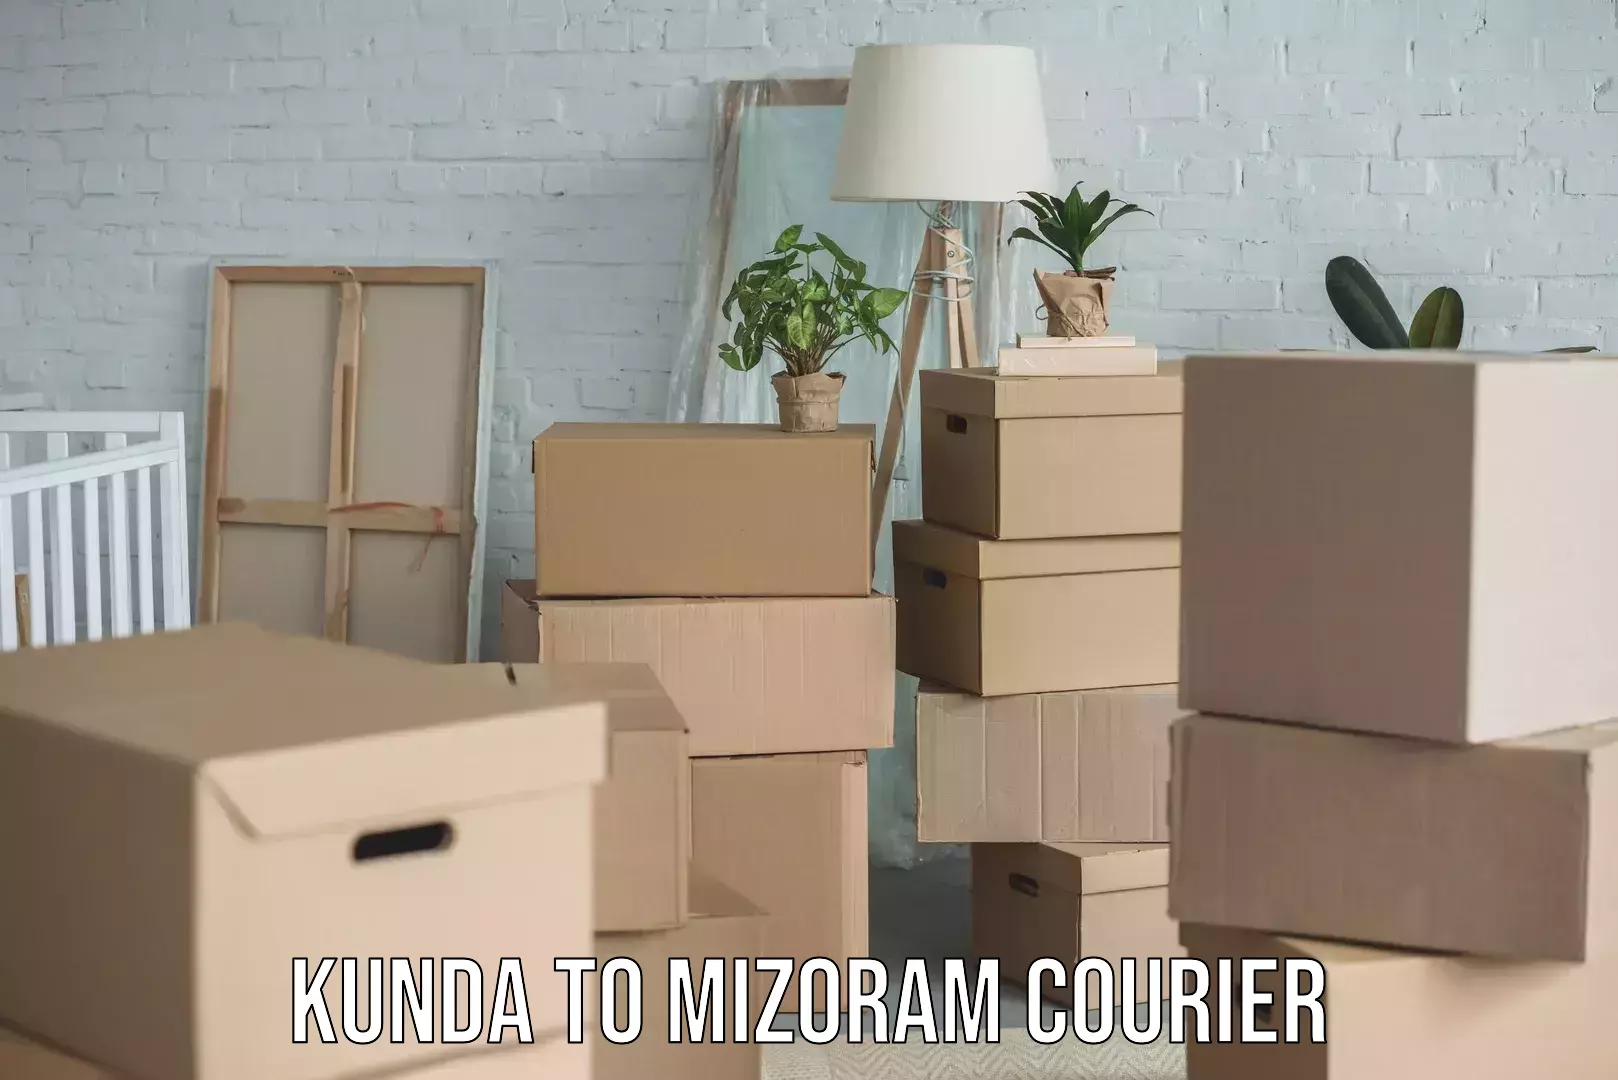 Trusted moving company Kunda to Mizoram